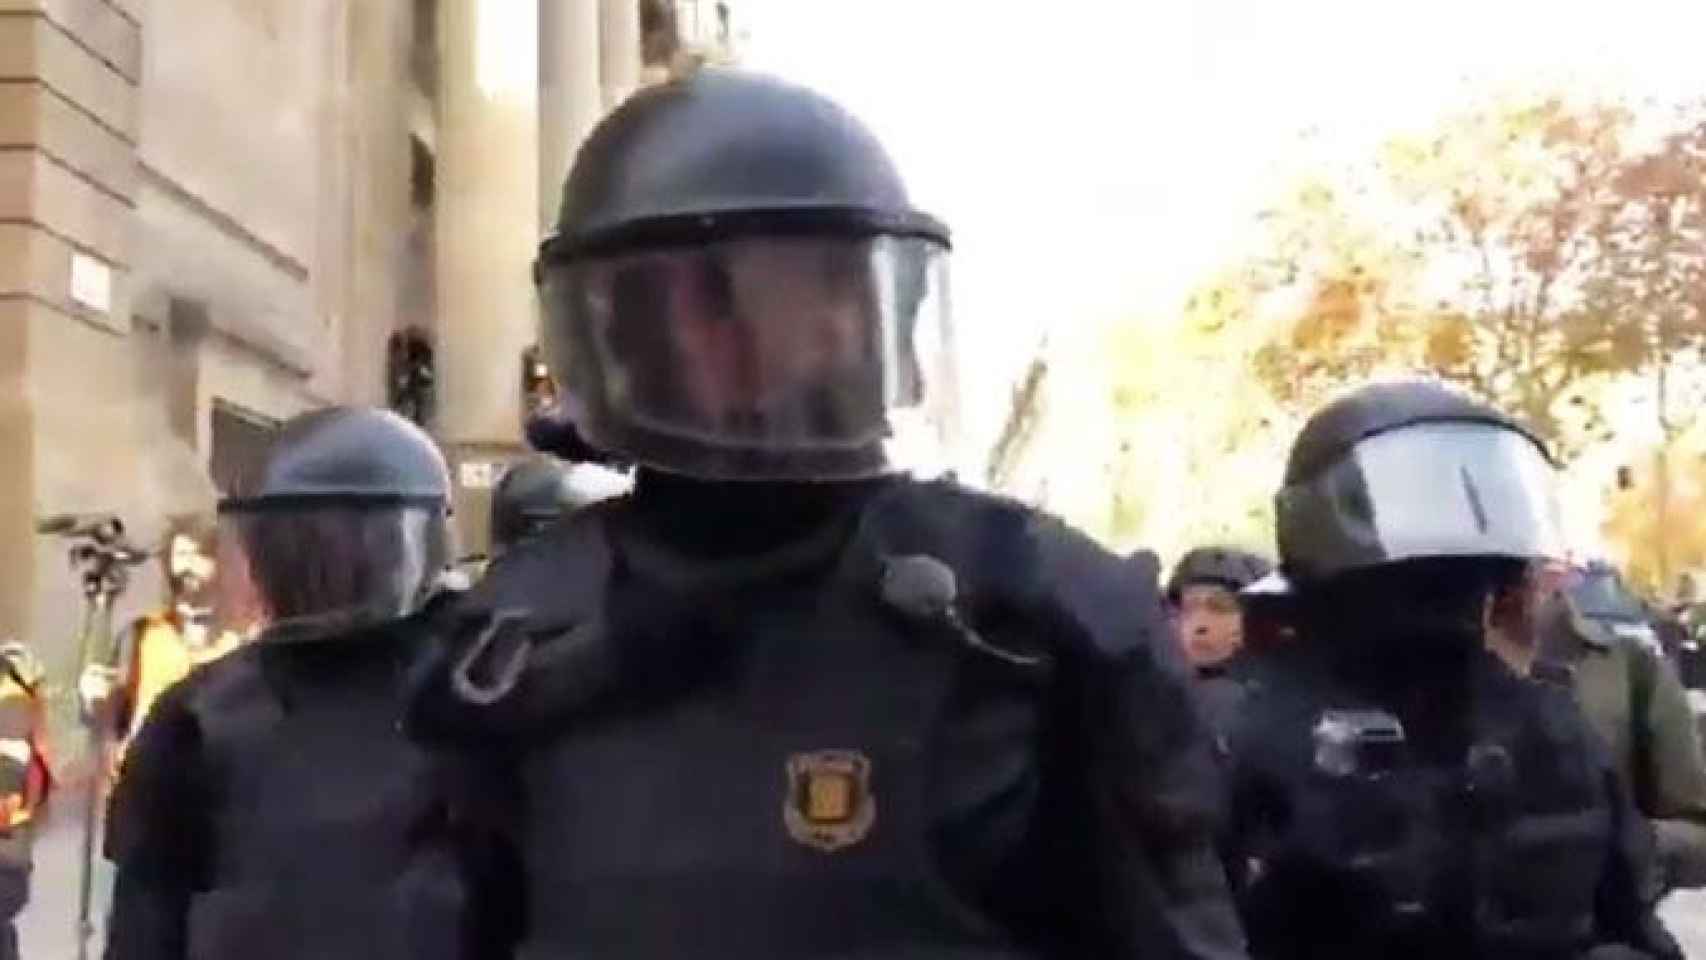 El agente antidisturbios de los Mossos d'Esquadra que recordó que la república no existe a un manifestante el 21D / CG